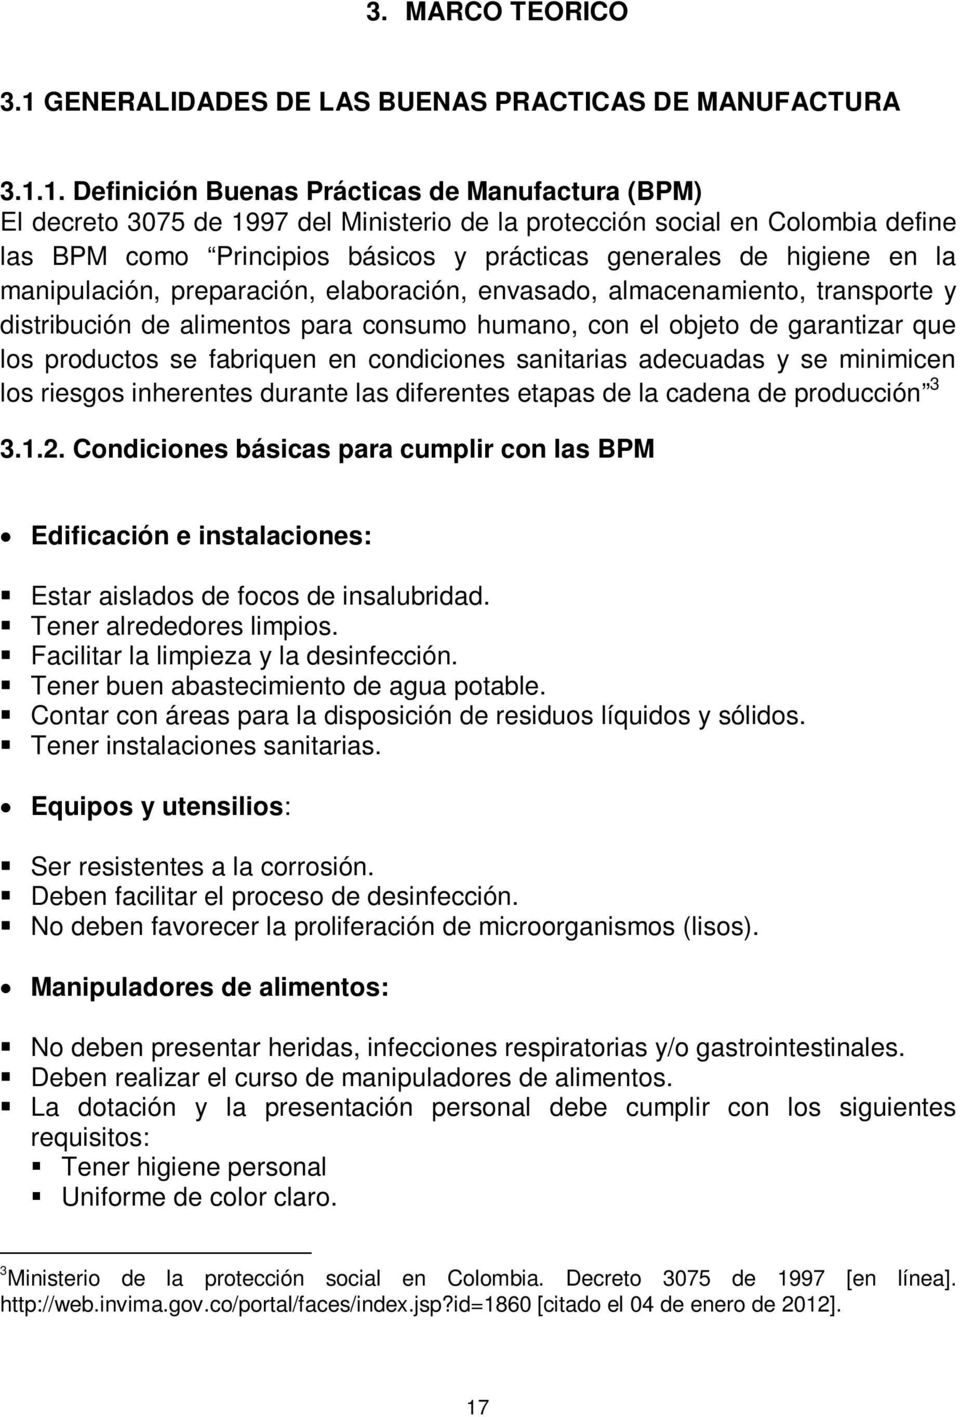 1. Definición Buenas Prácticas de Manufactura (BPM) El decreto 3075 de 1997 del Ministerio de la protección social en Colombia define las BPM como Principios básicos y prácticas generales de higiene